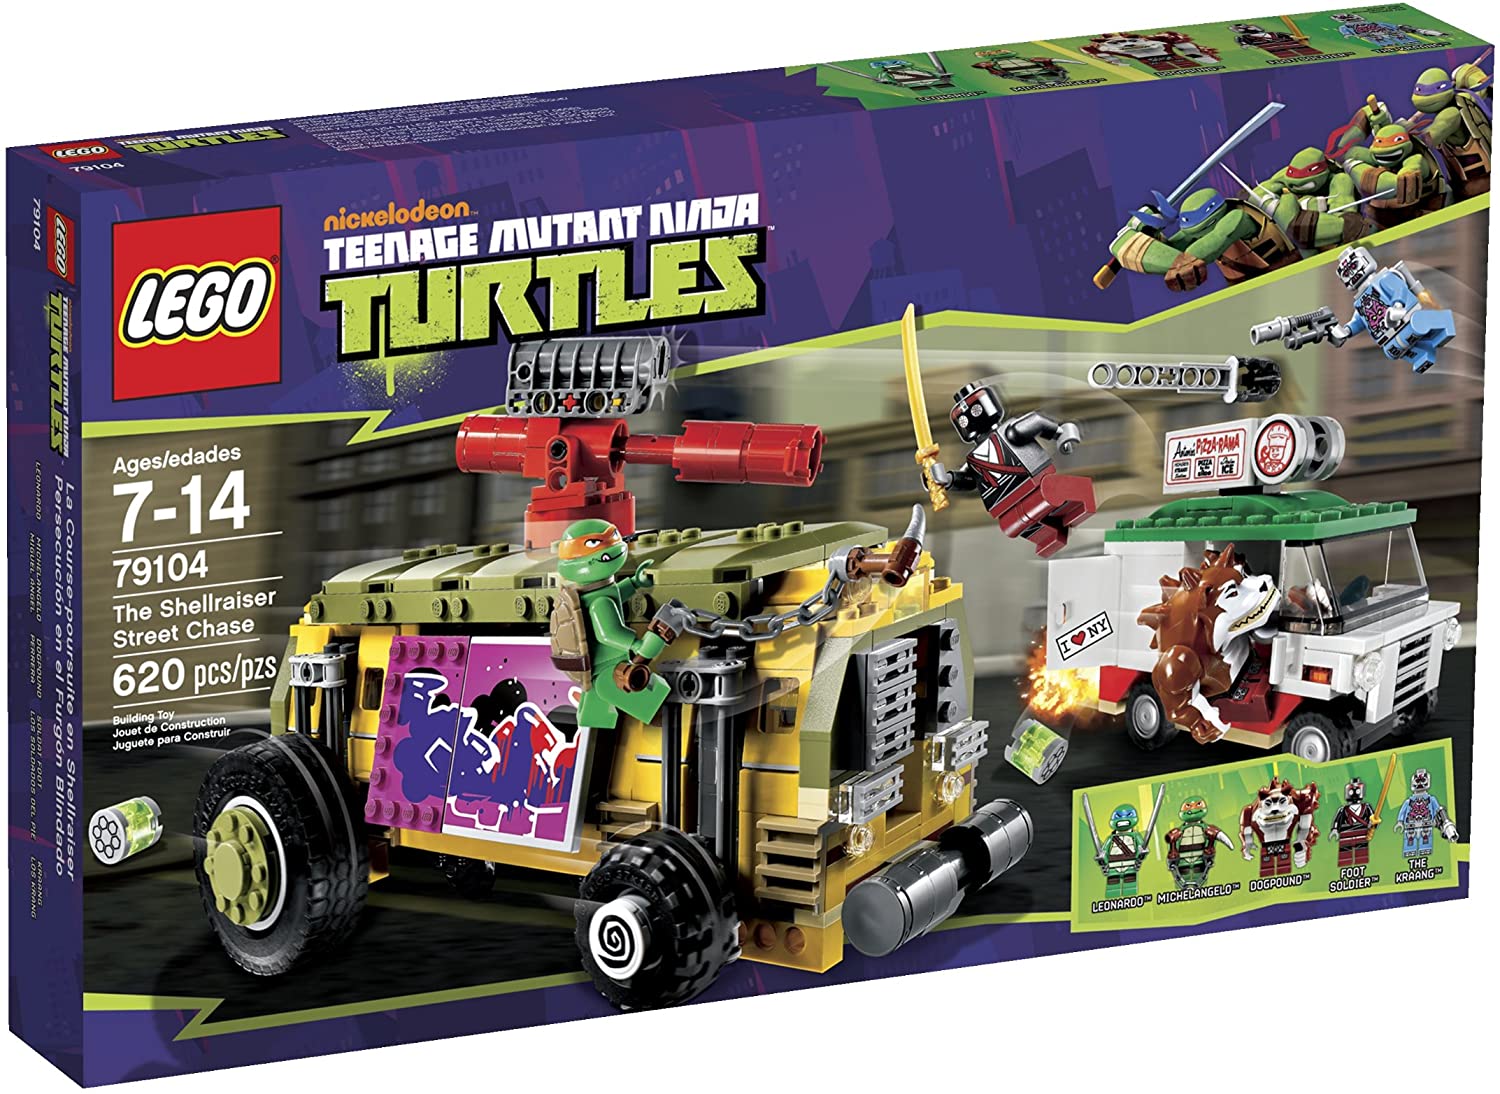 LEGO Teenage Mutant Ninja Turtles The Shellraiser Street Chase Set 